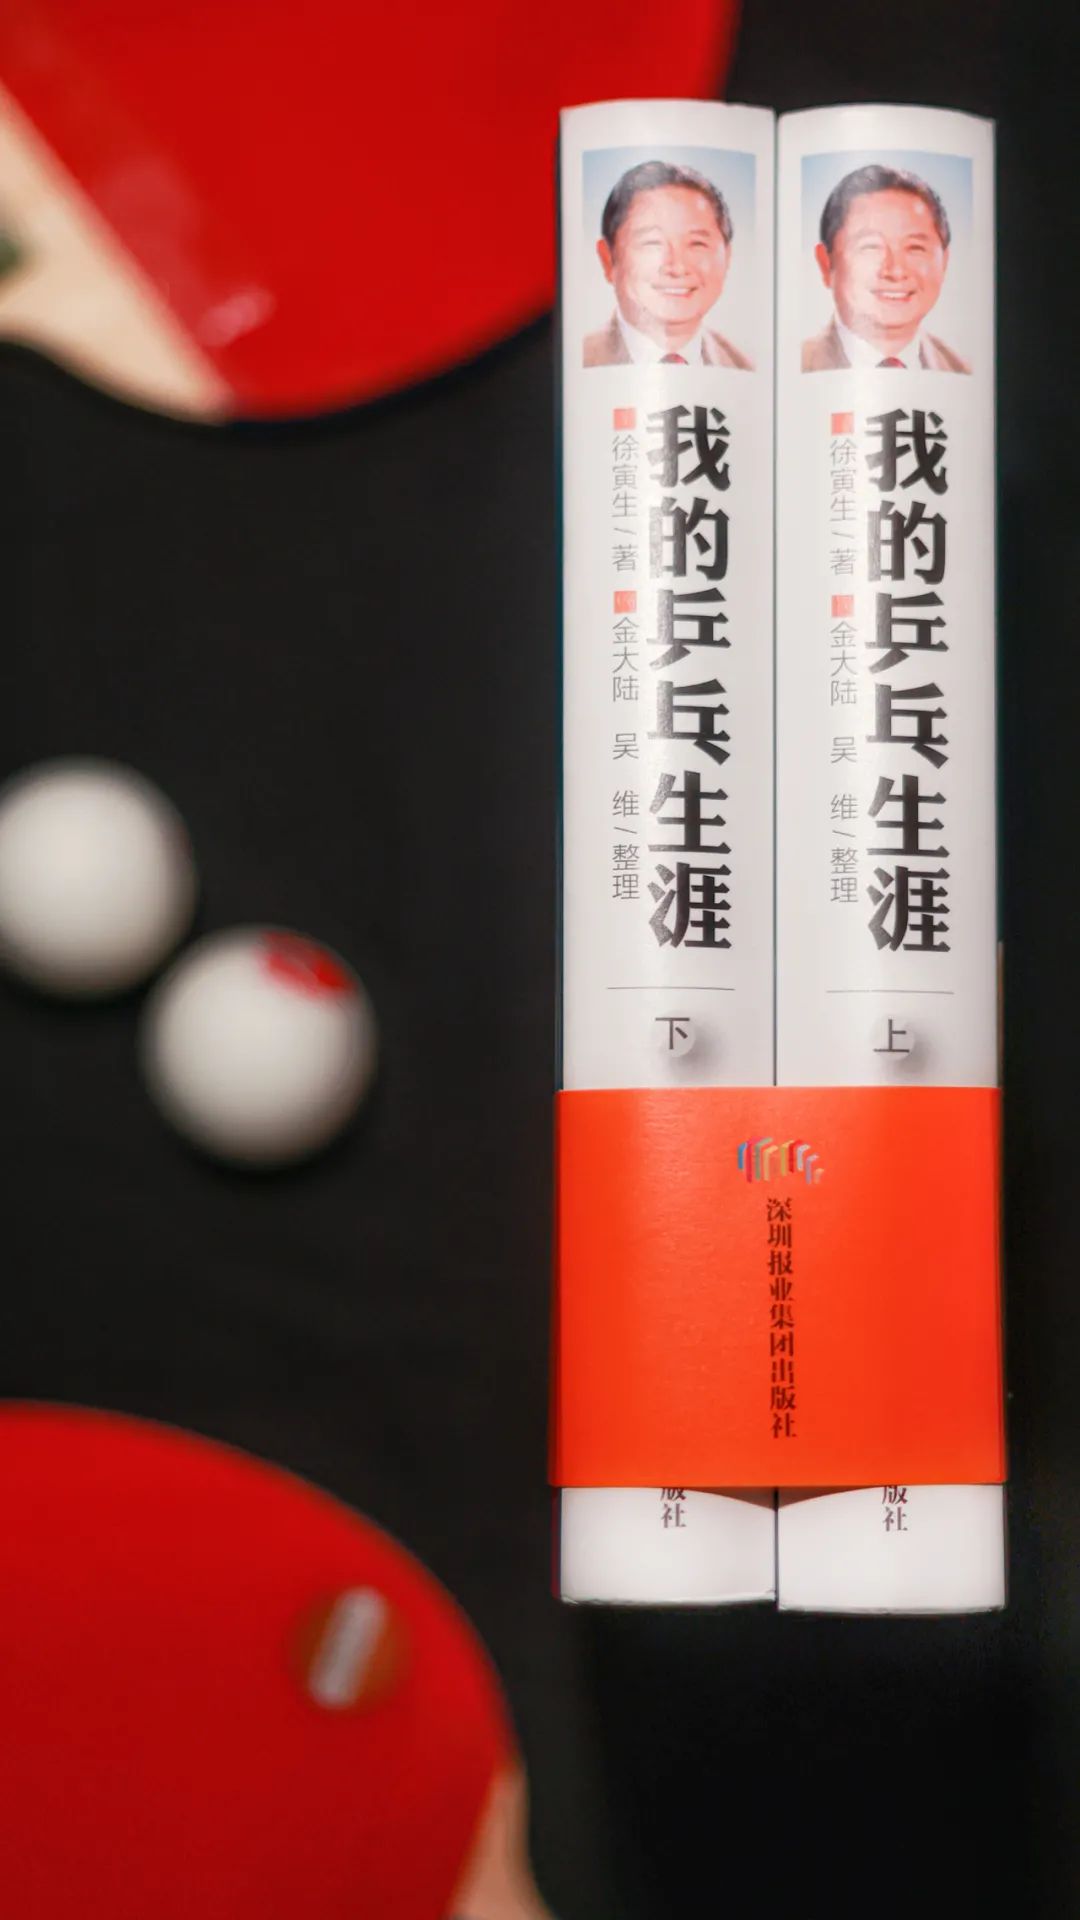 国际乒联终身名誉主席徐寅生再出新书《我的乒乓生涯》